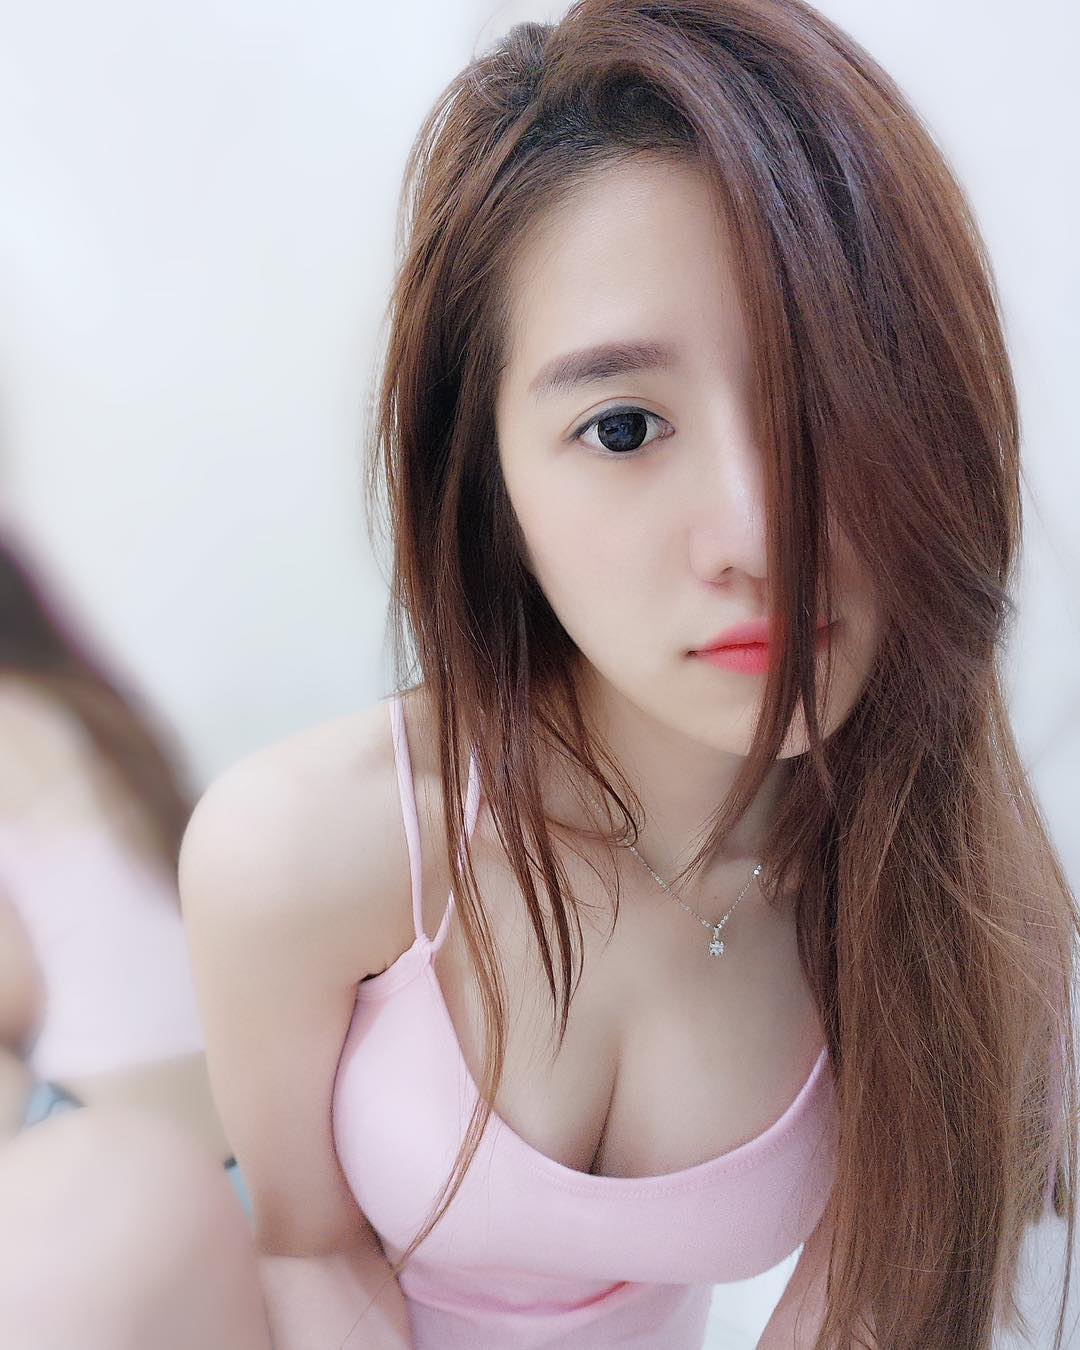 Tan chảy trước hình ảnh nóng bỏng của hot girl Quah Sue Theng